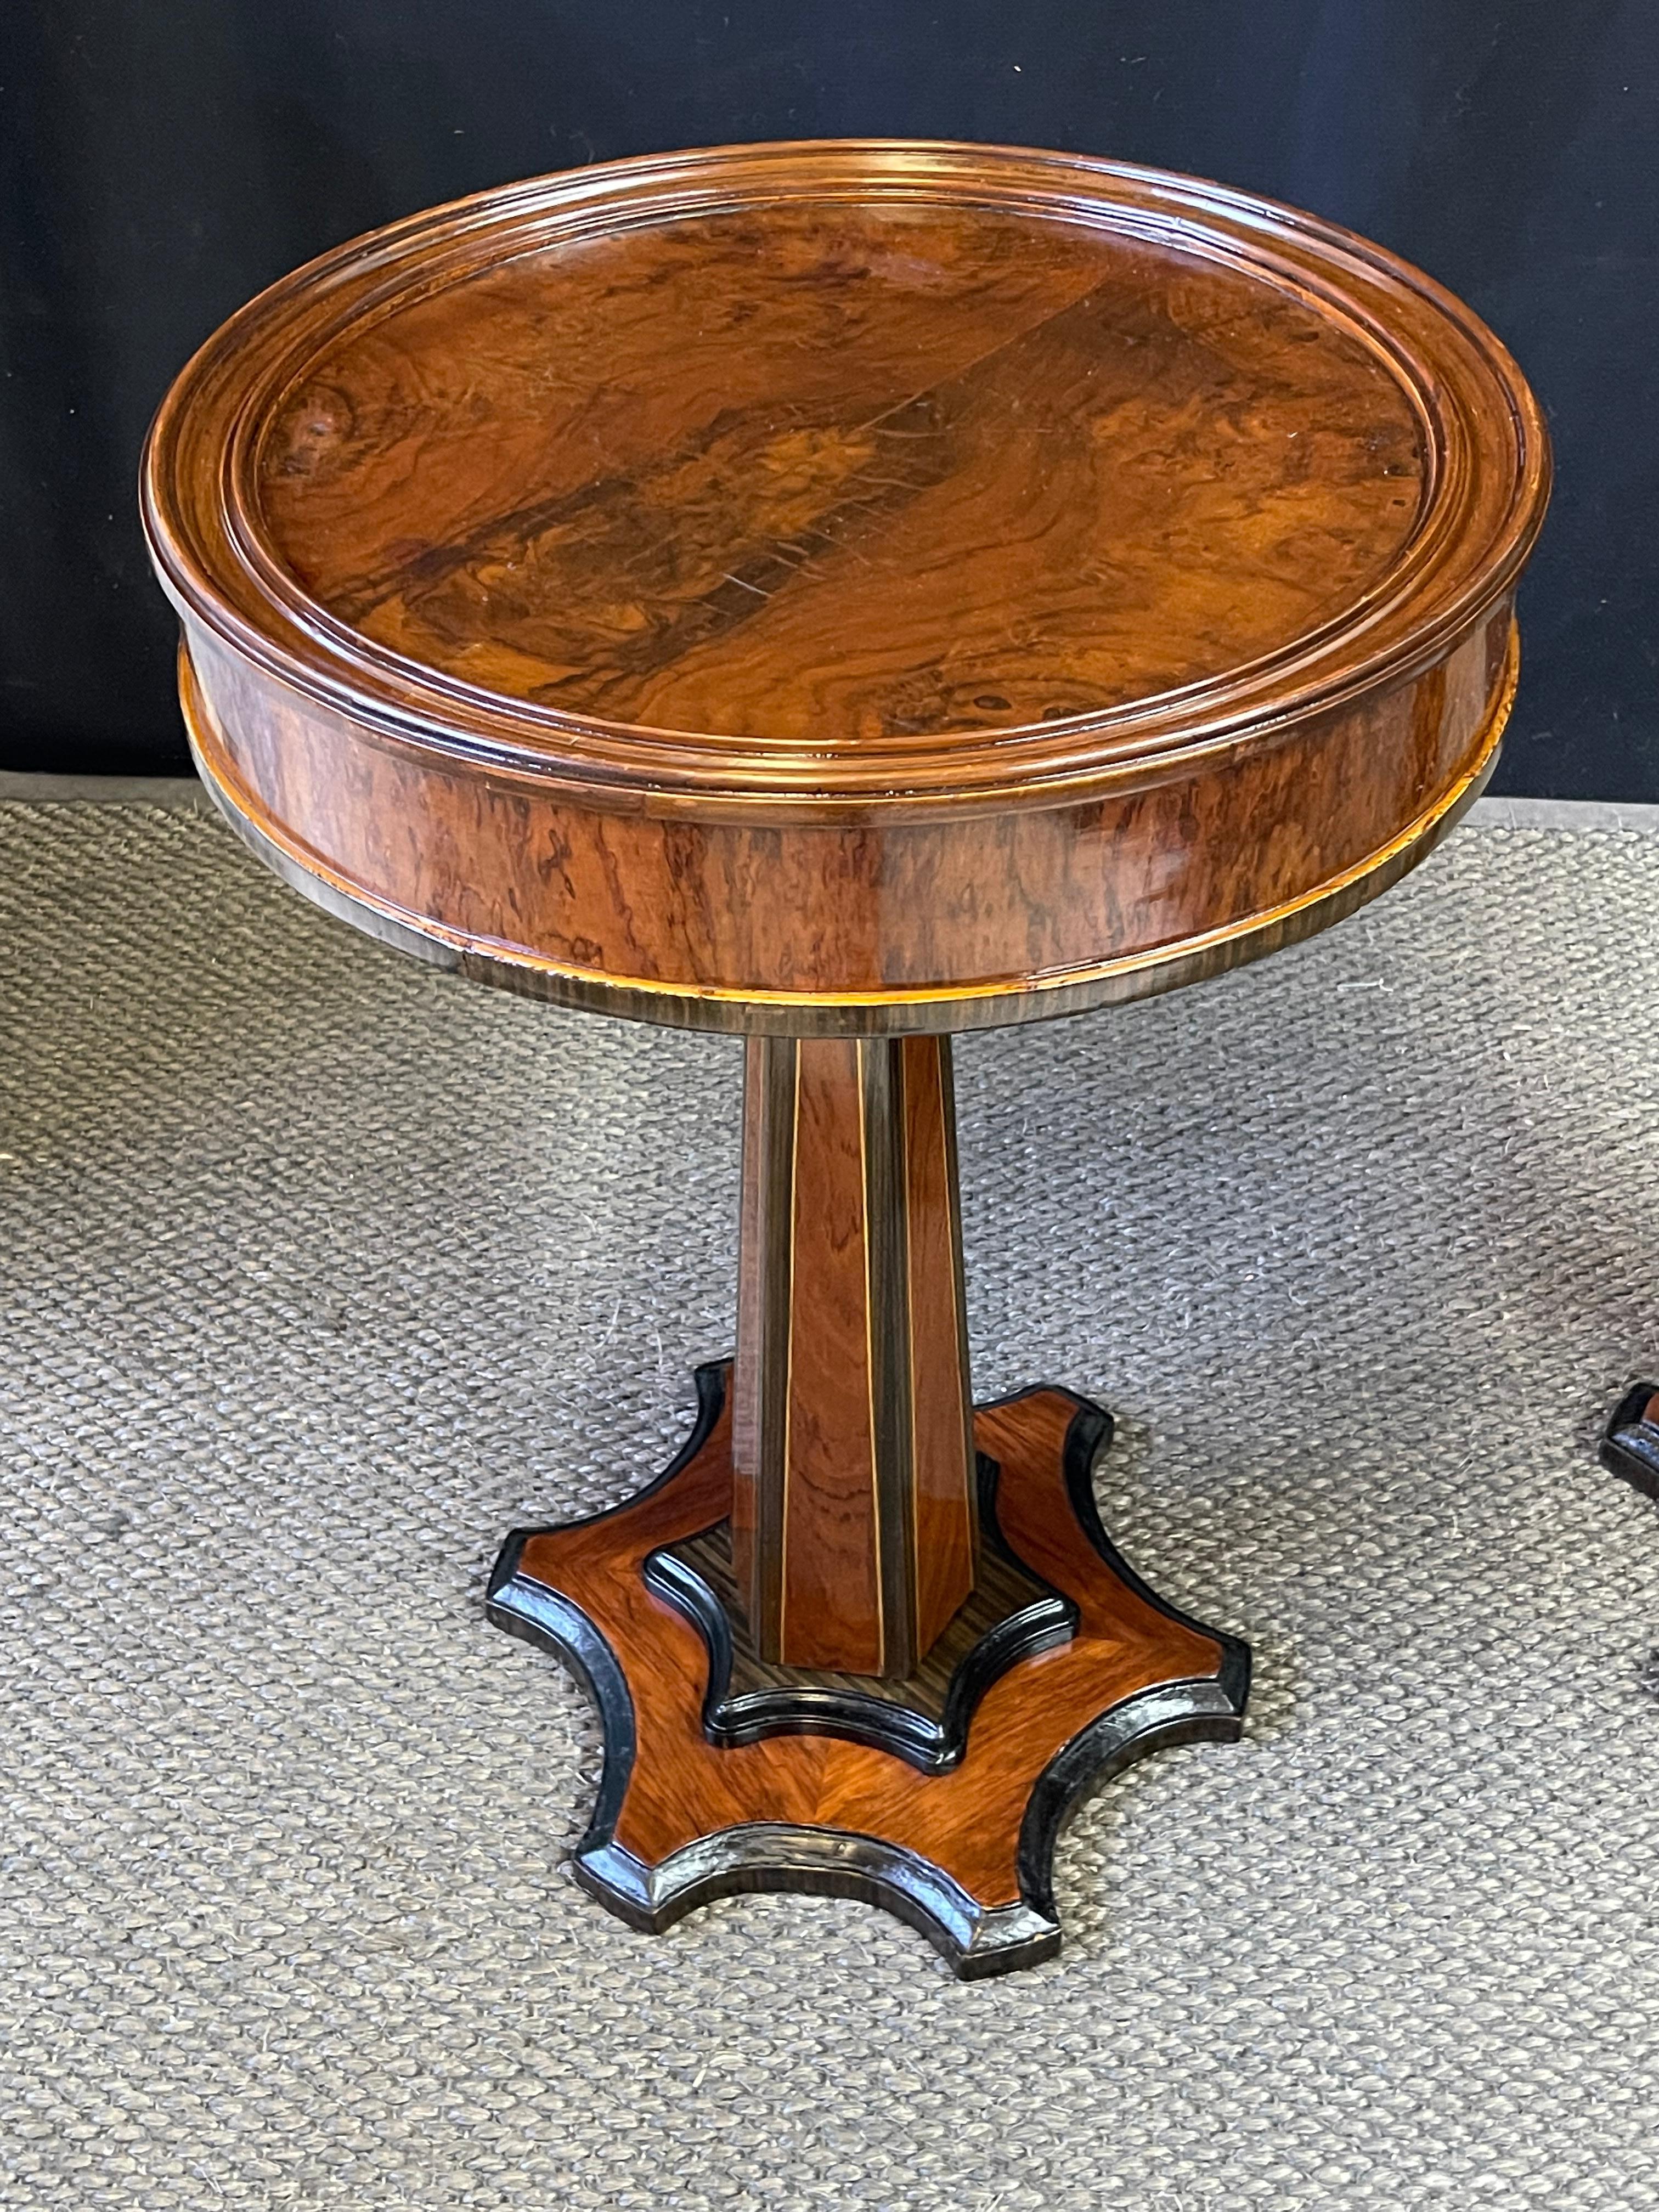 Dies ist ein auffallendes Paar französischer Art Deco Gueridon-Tische des frühen 20. Jahrhunderts, reich an Wurzelholzfurnieren aus Nussbaum und Palisander mit komplizierten Satinholzeinlagen und ebonisierten Akzenten. Jede runde Tischplatte ist in